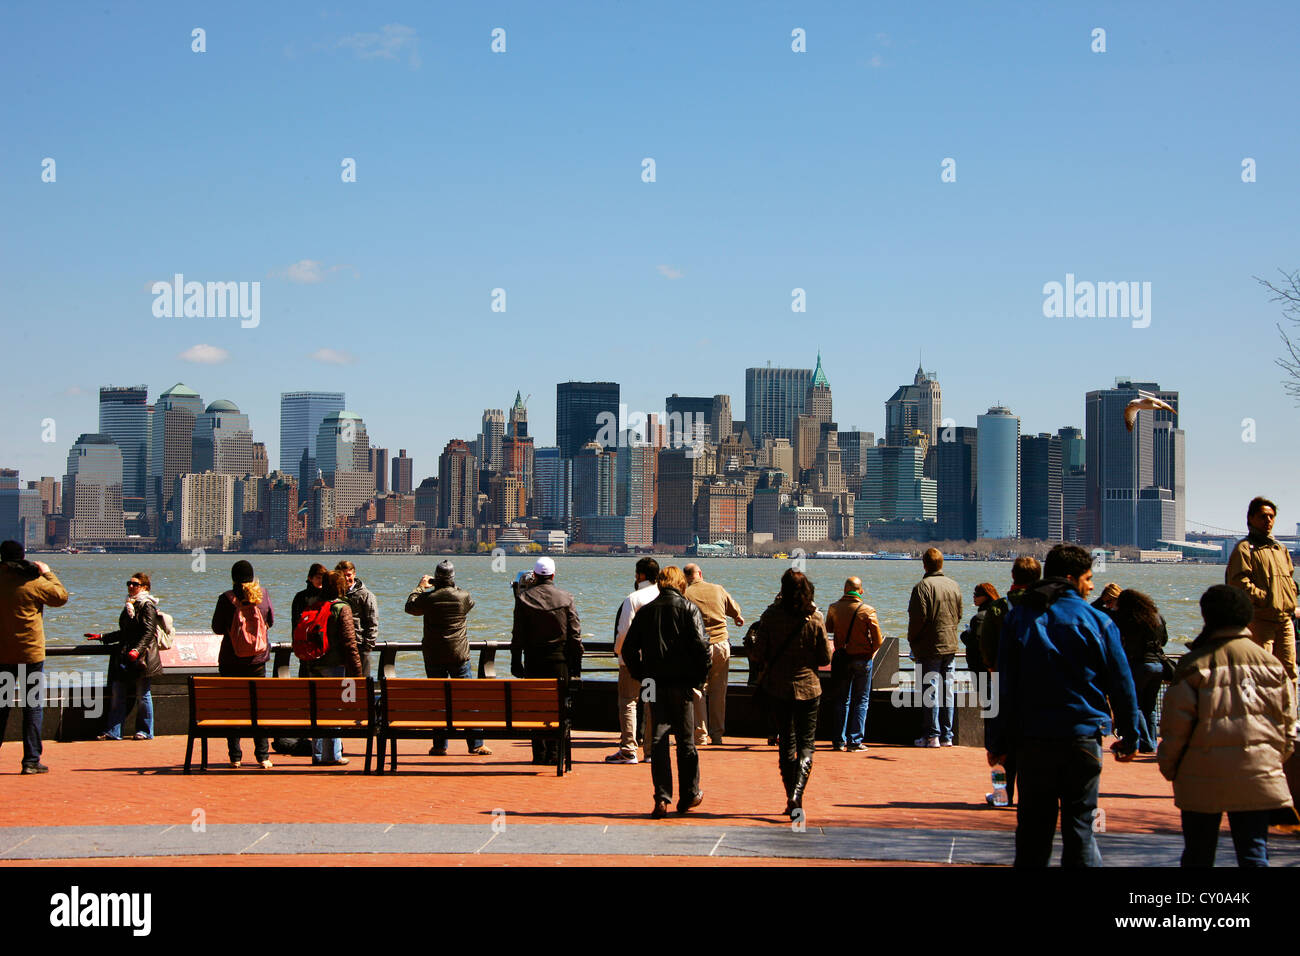 Les touristes sur Liberty Island, dans le contexte de la skyline de New York City, New York, United States, Amérique du Nord Banque D'Images